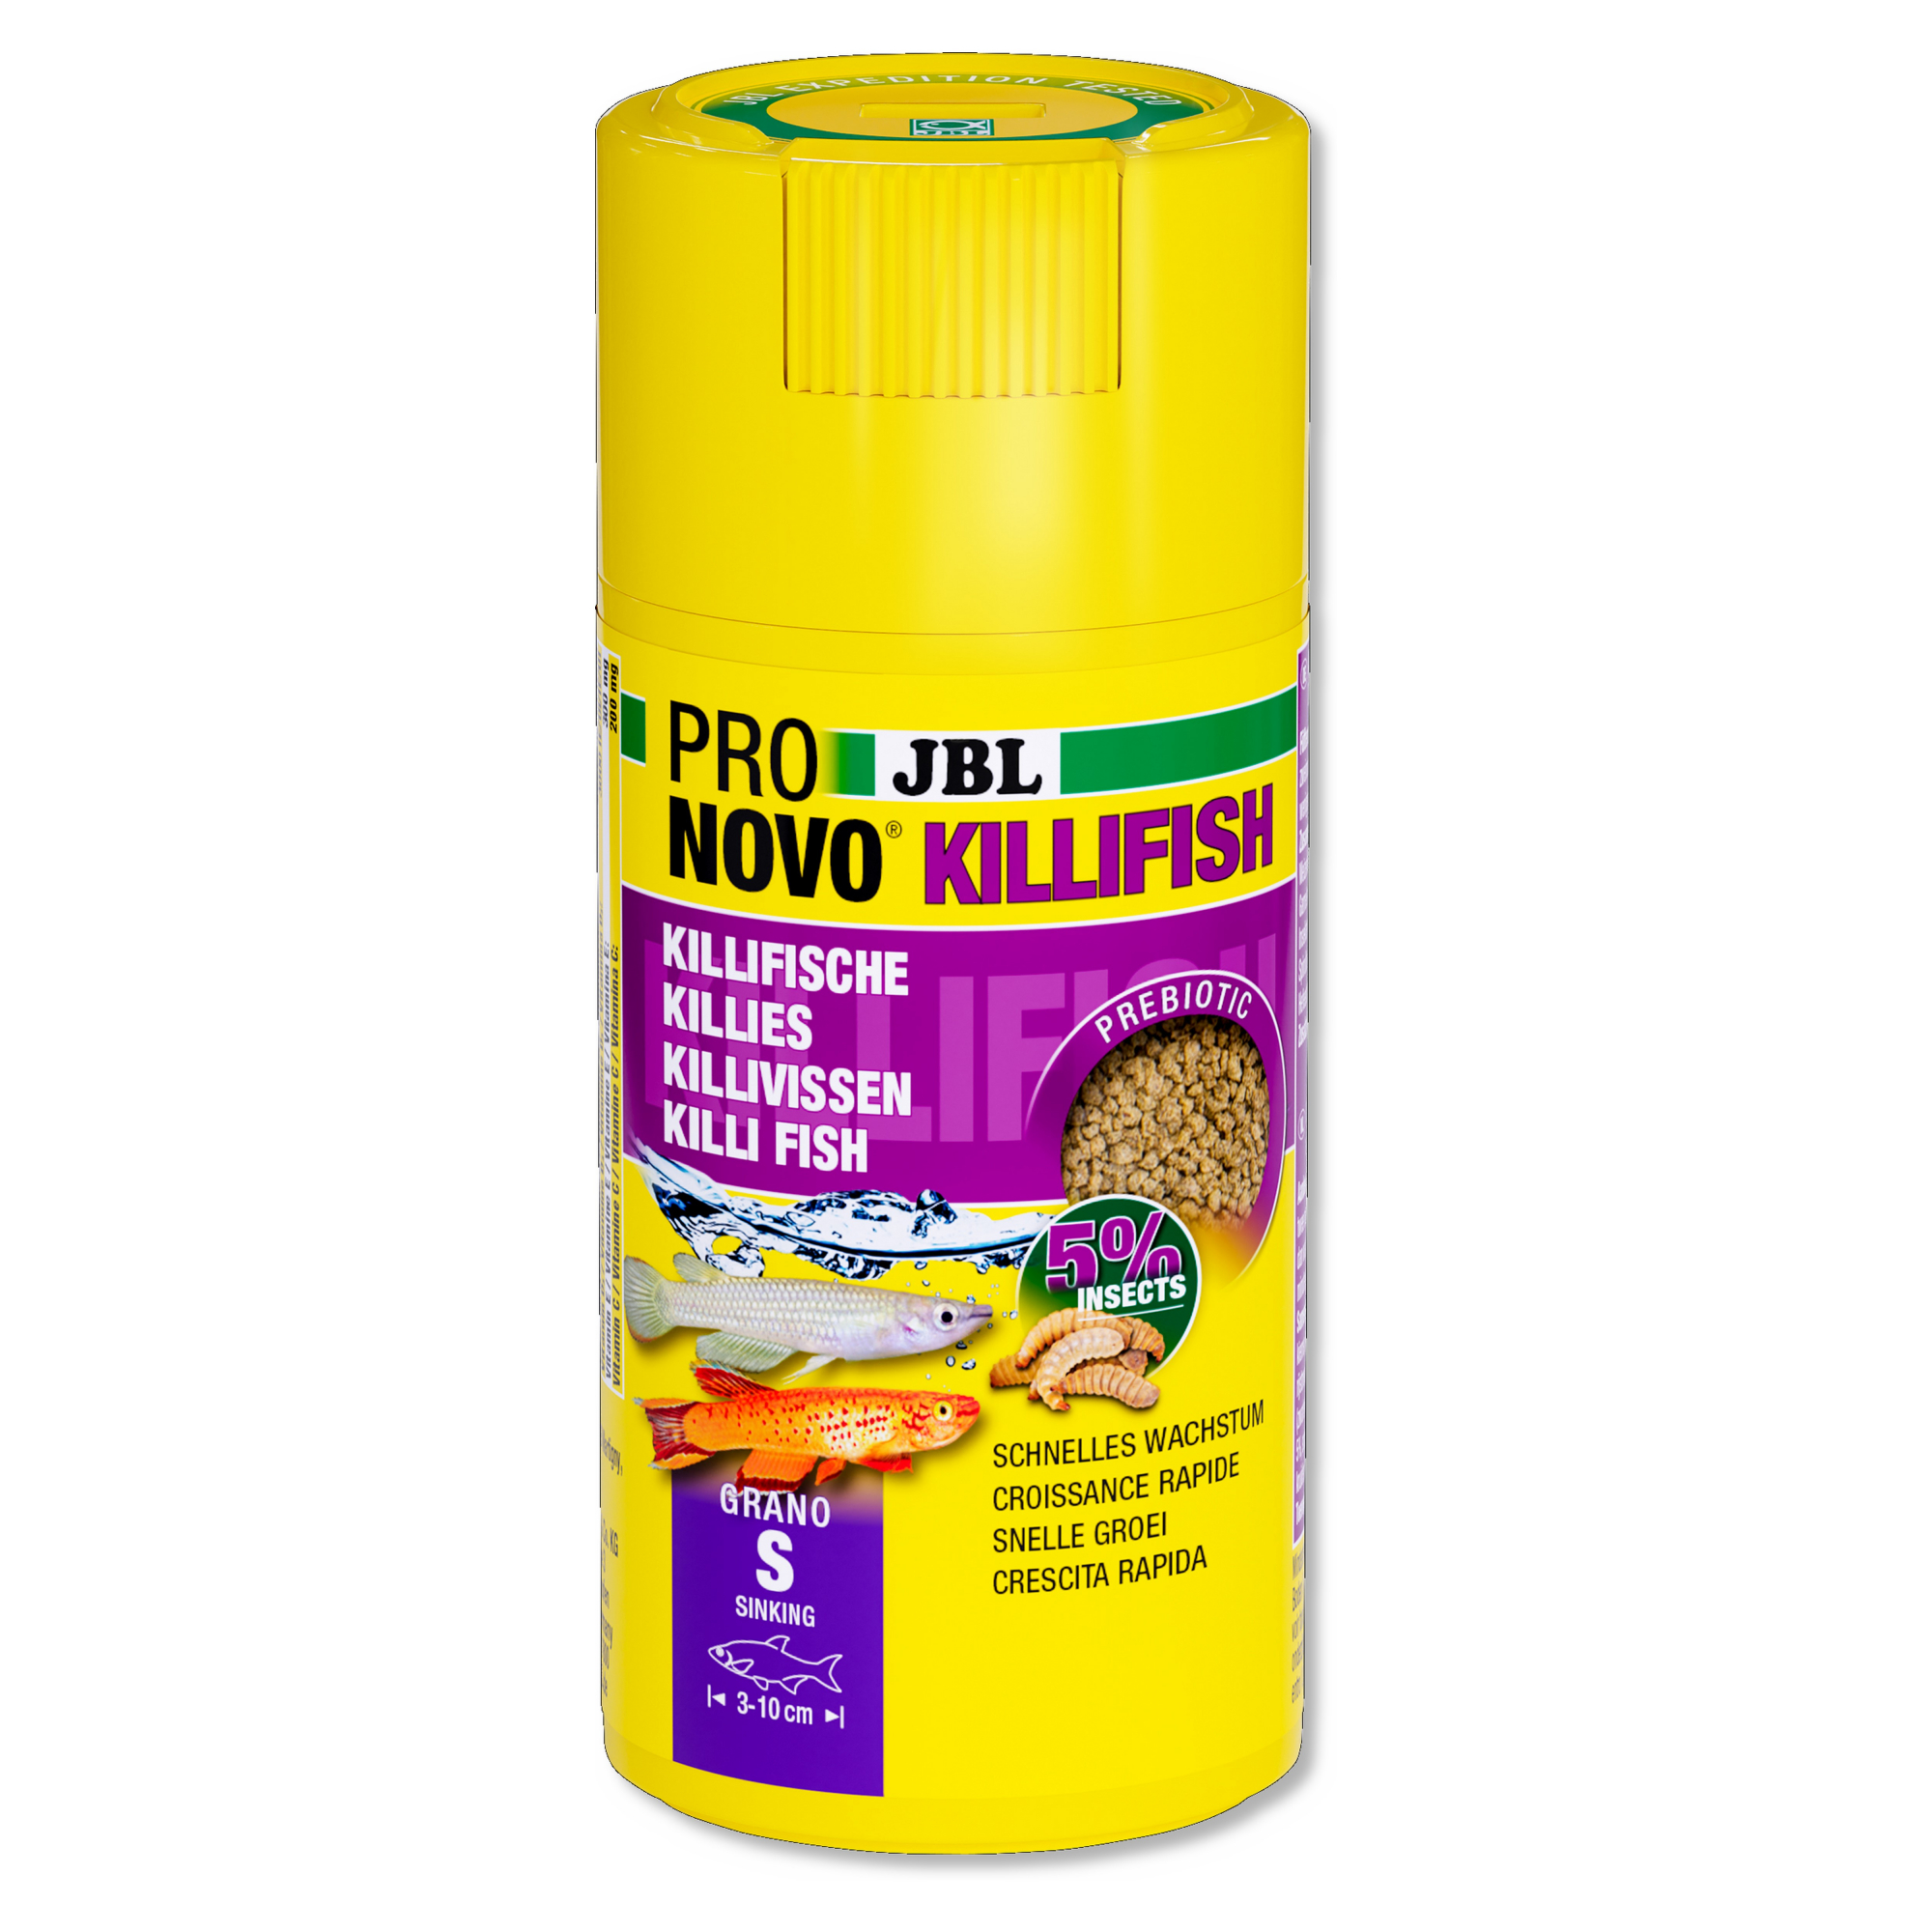 JBL Pronovo Killifish Grano S Click granulés pour poissons Killi